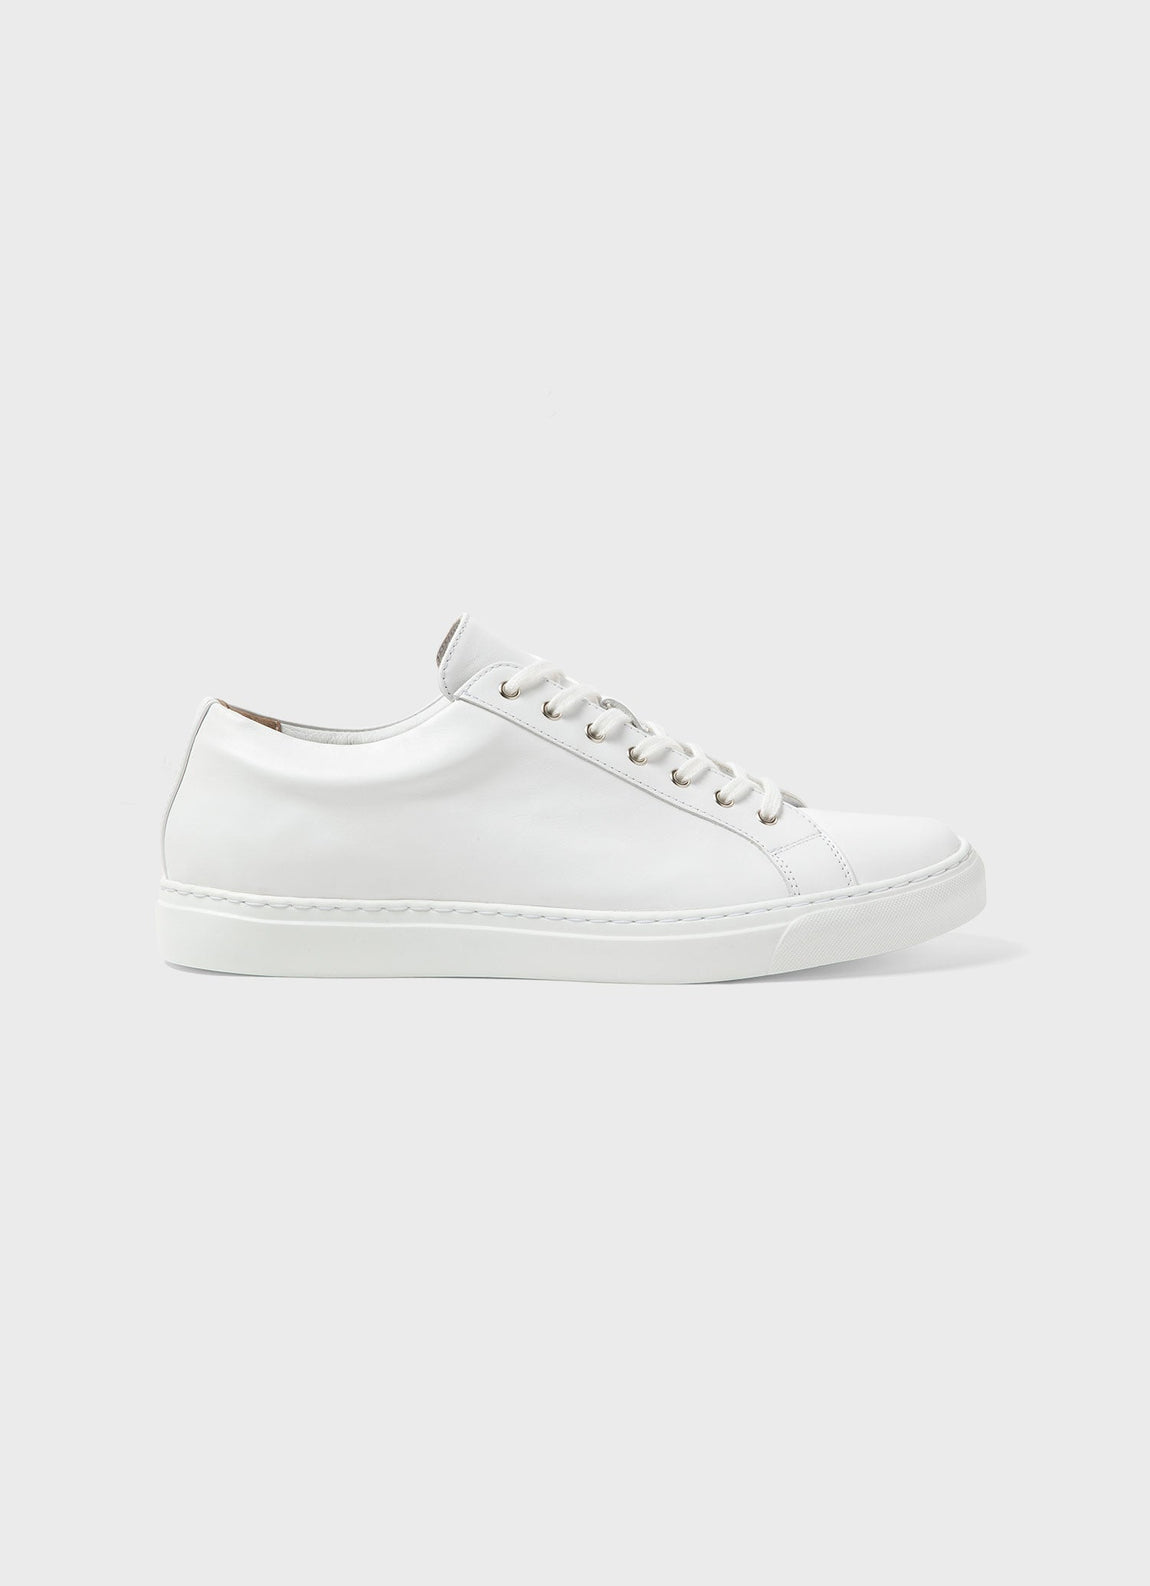 behalve voor Zegenen Clam Men's Leather Tennis shoe in White | Sunspel